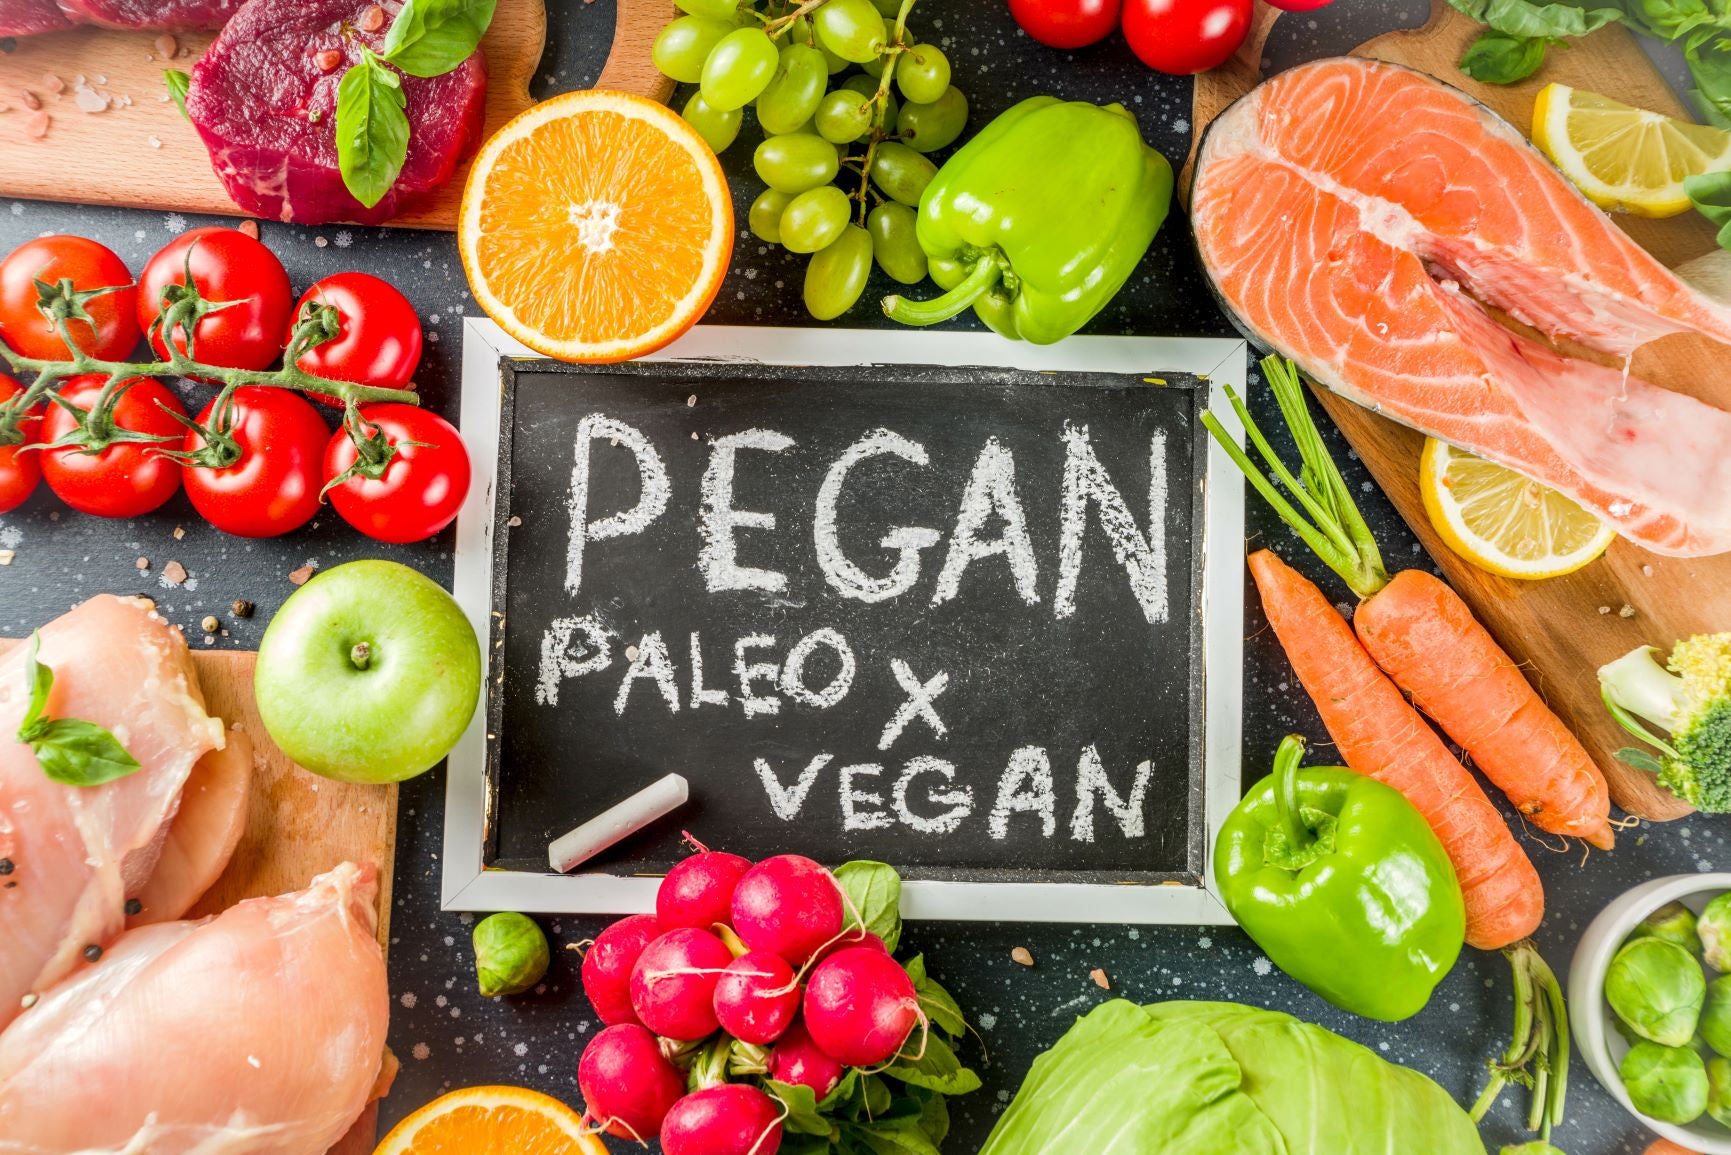 Pegan: Paleo trifft auf vegan